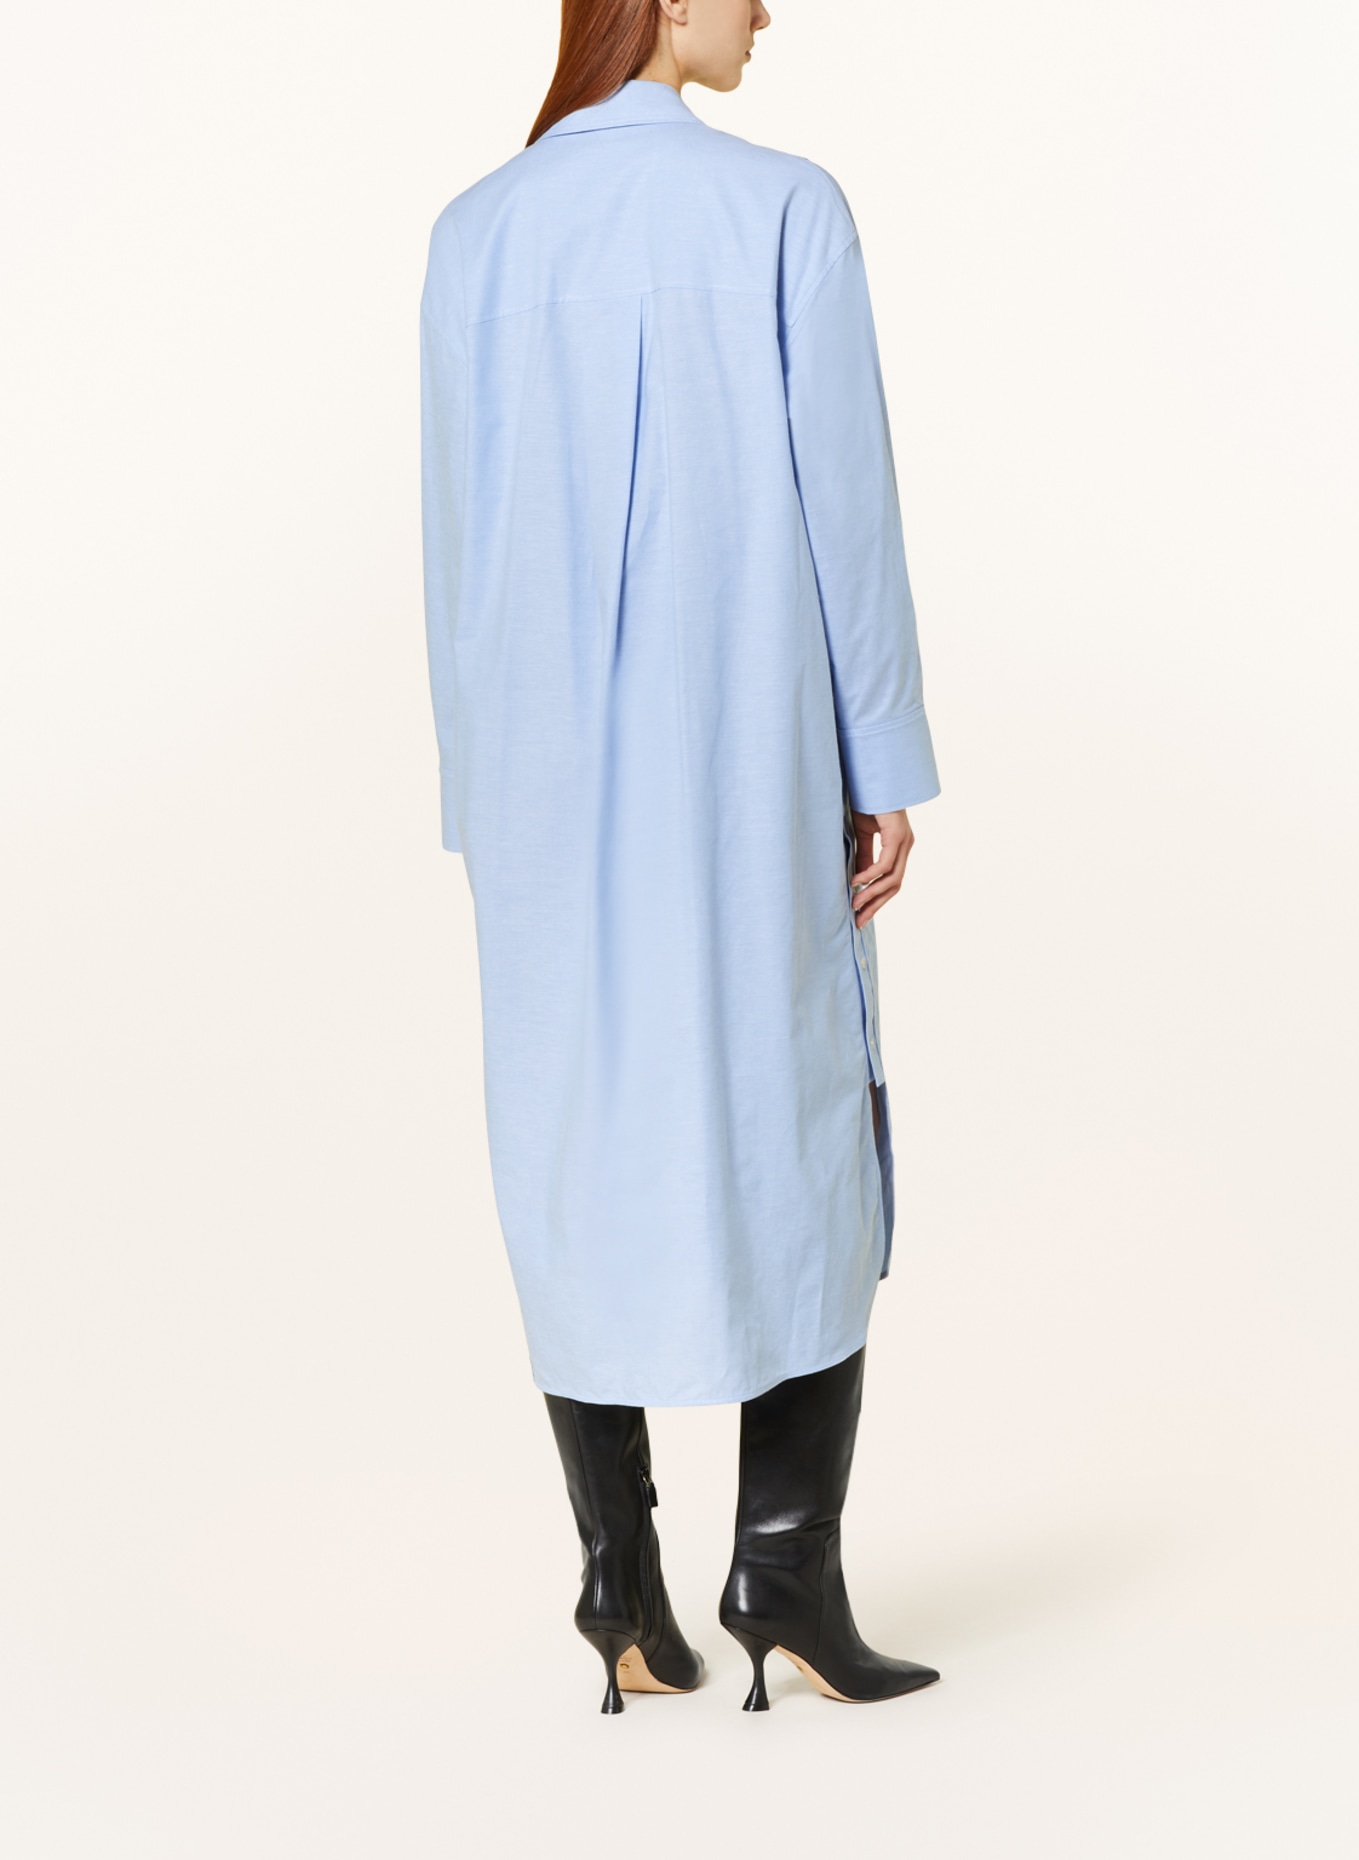 COS Shirt dress, Color: LIGHT BLUE (Image 3)